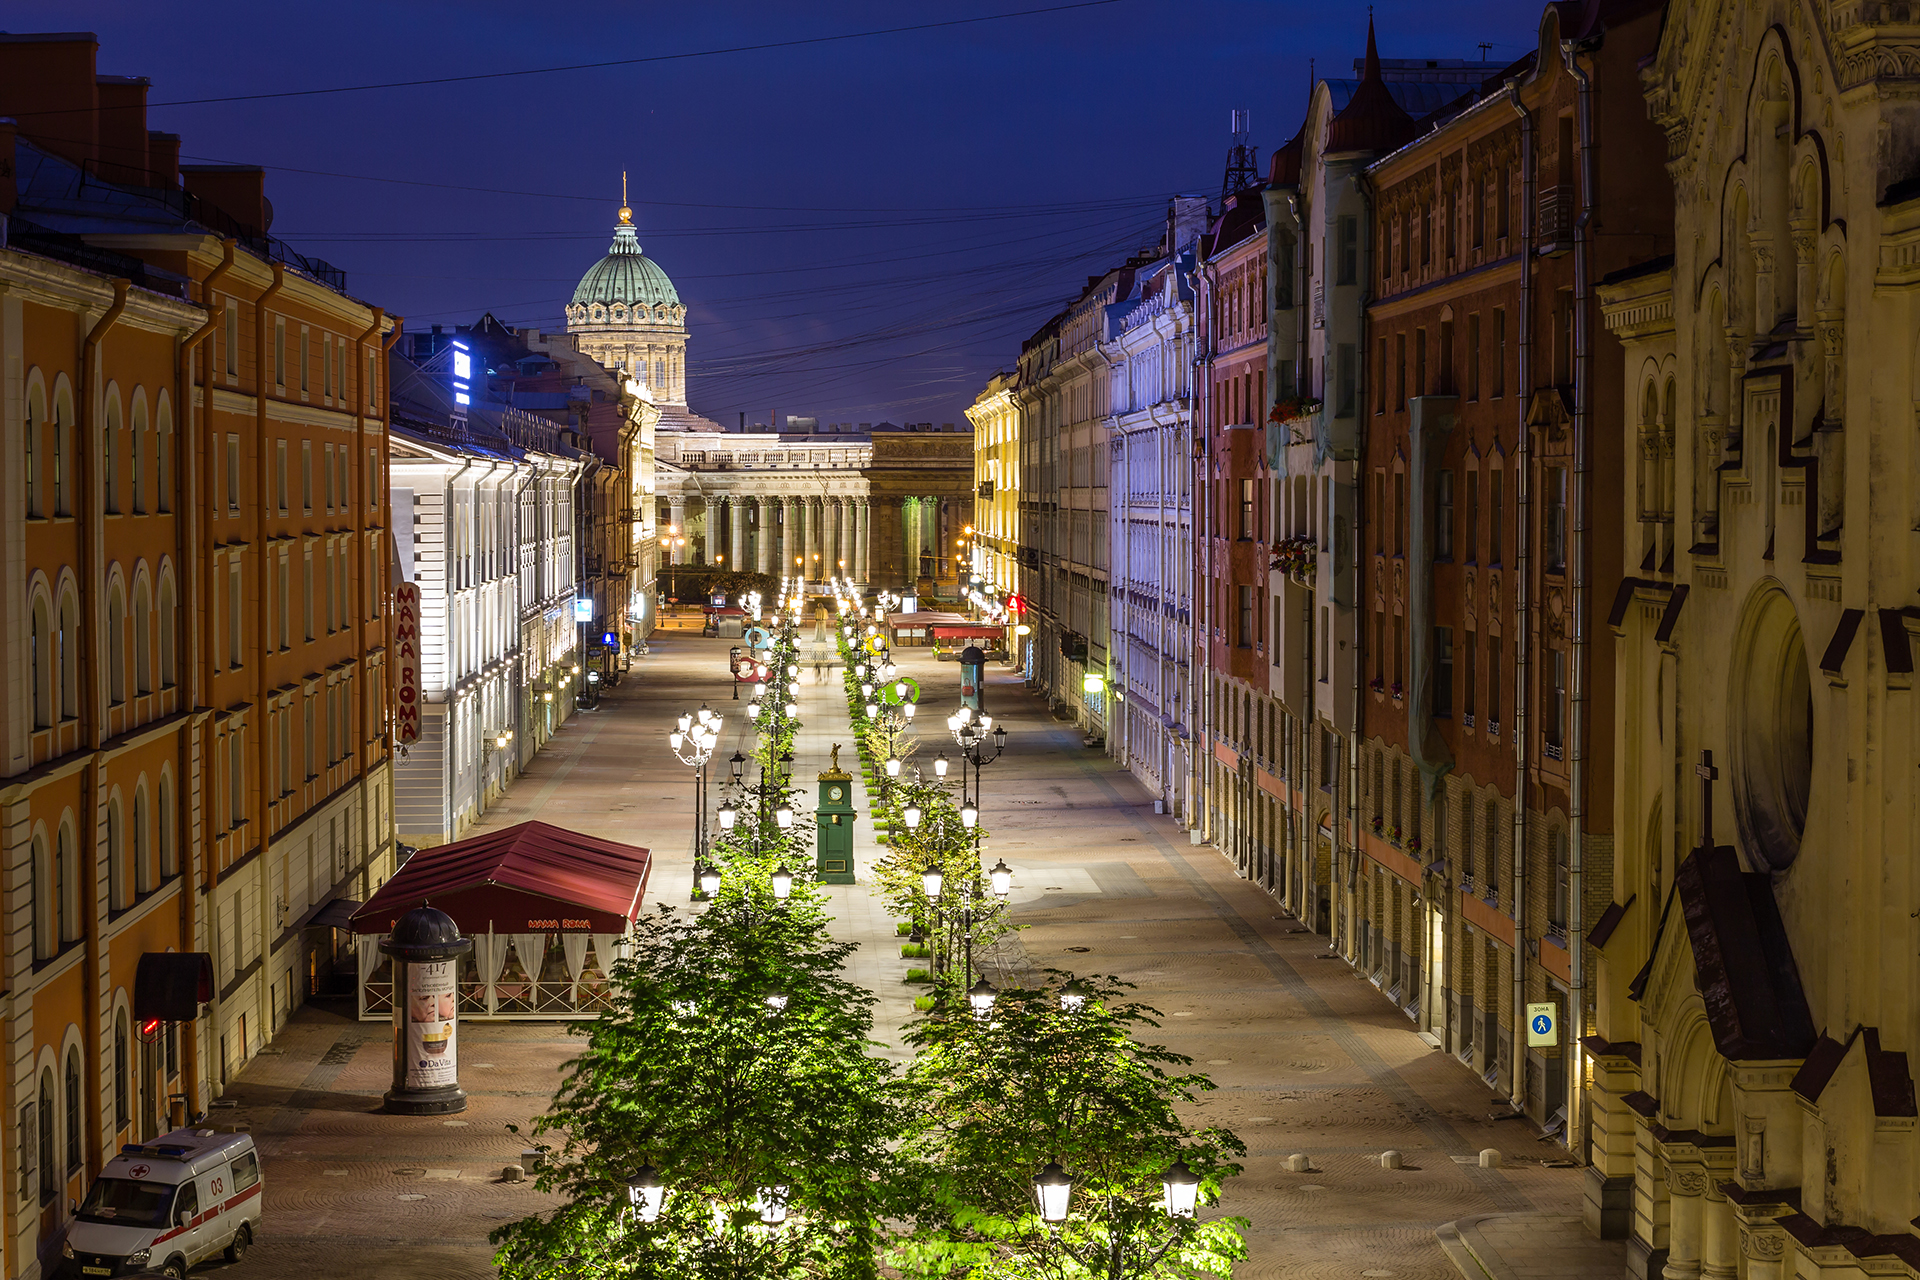 Санкт Петербург е много повече от изпълнен с живот град: той е непрестанен празник. От просторните улици до богато украсените културни паметници от имперското минало, руската „Венеция на Севера“ не спира да ни удивлява.